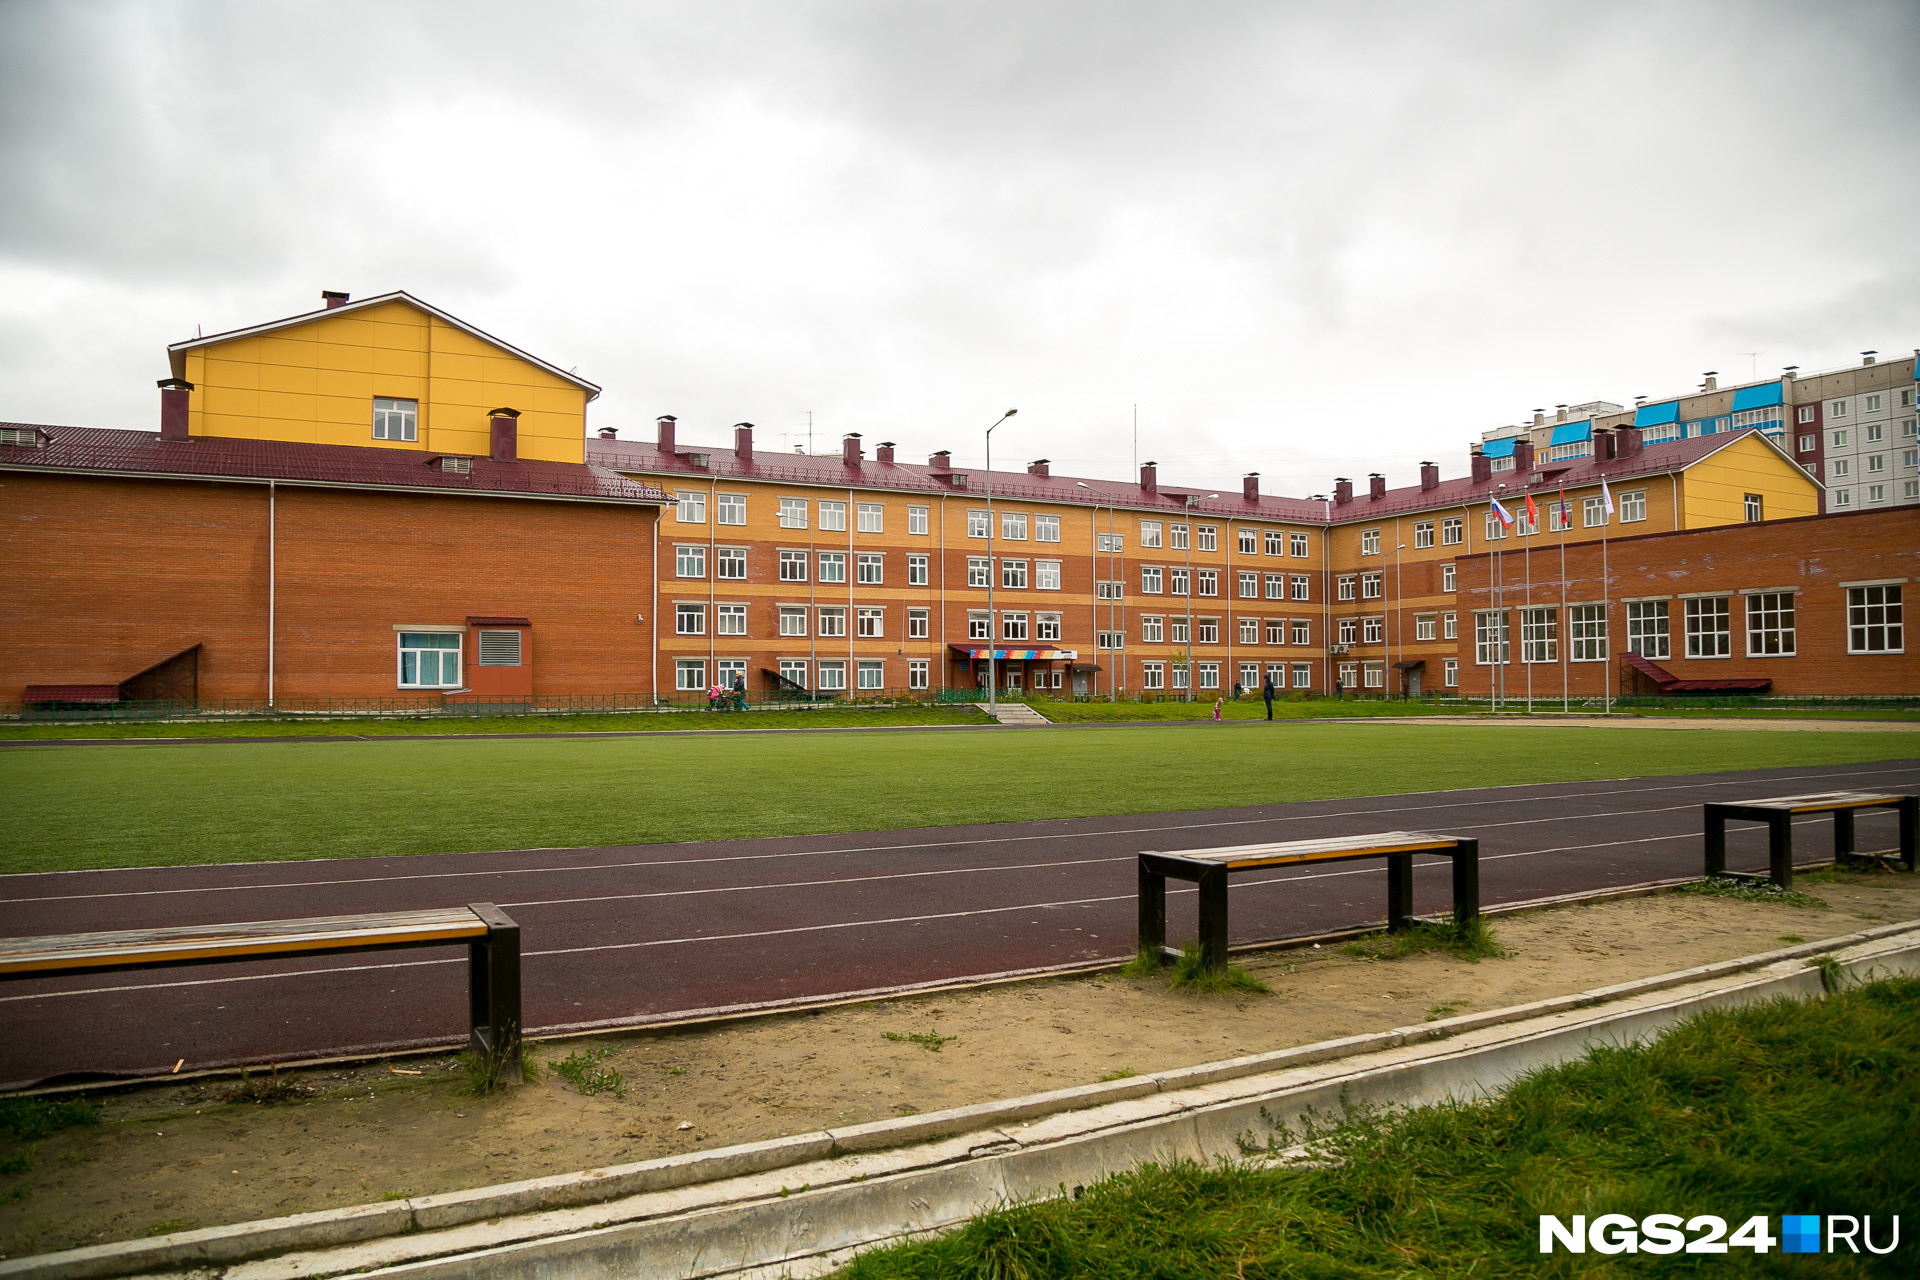 Громадное здание школы напоминает корпус какого-нибудь университета 